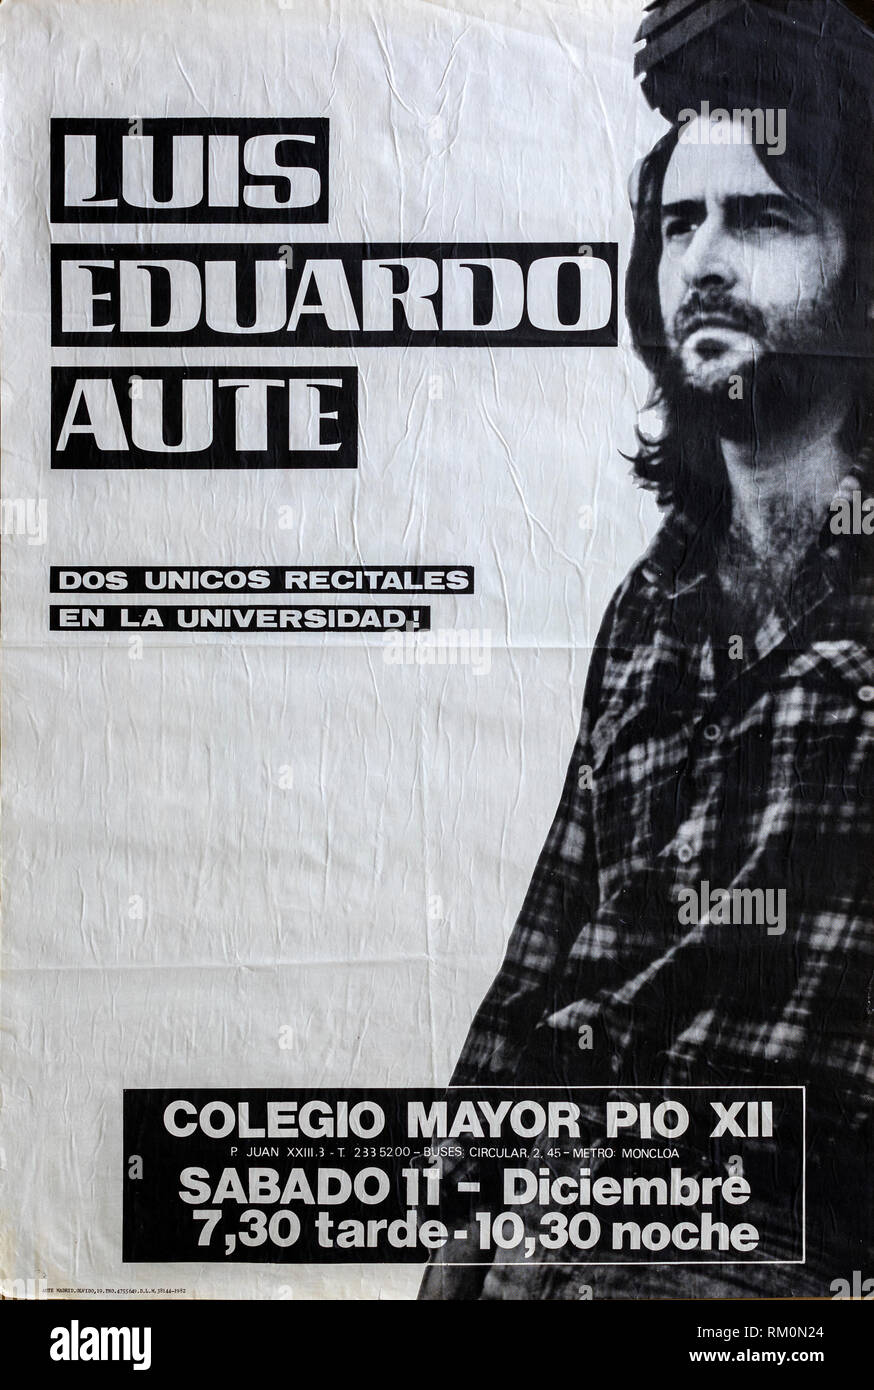 Luis Eduardo Aute, Madrid 1982 tour, concerto musicale poster Foto Stock